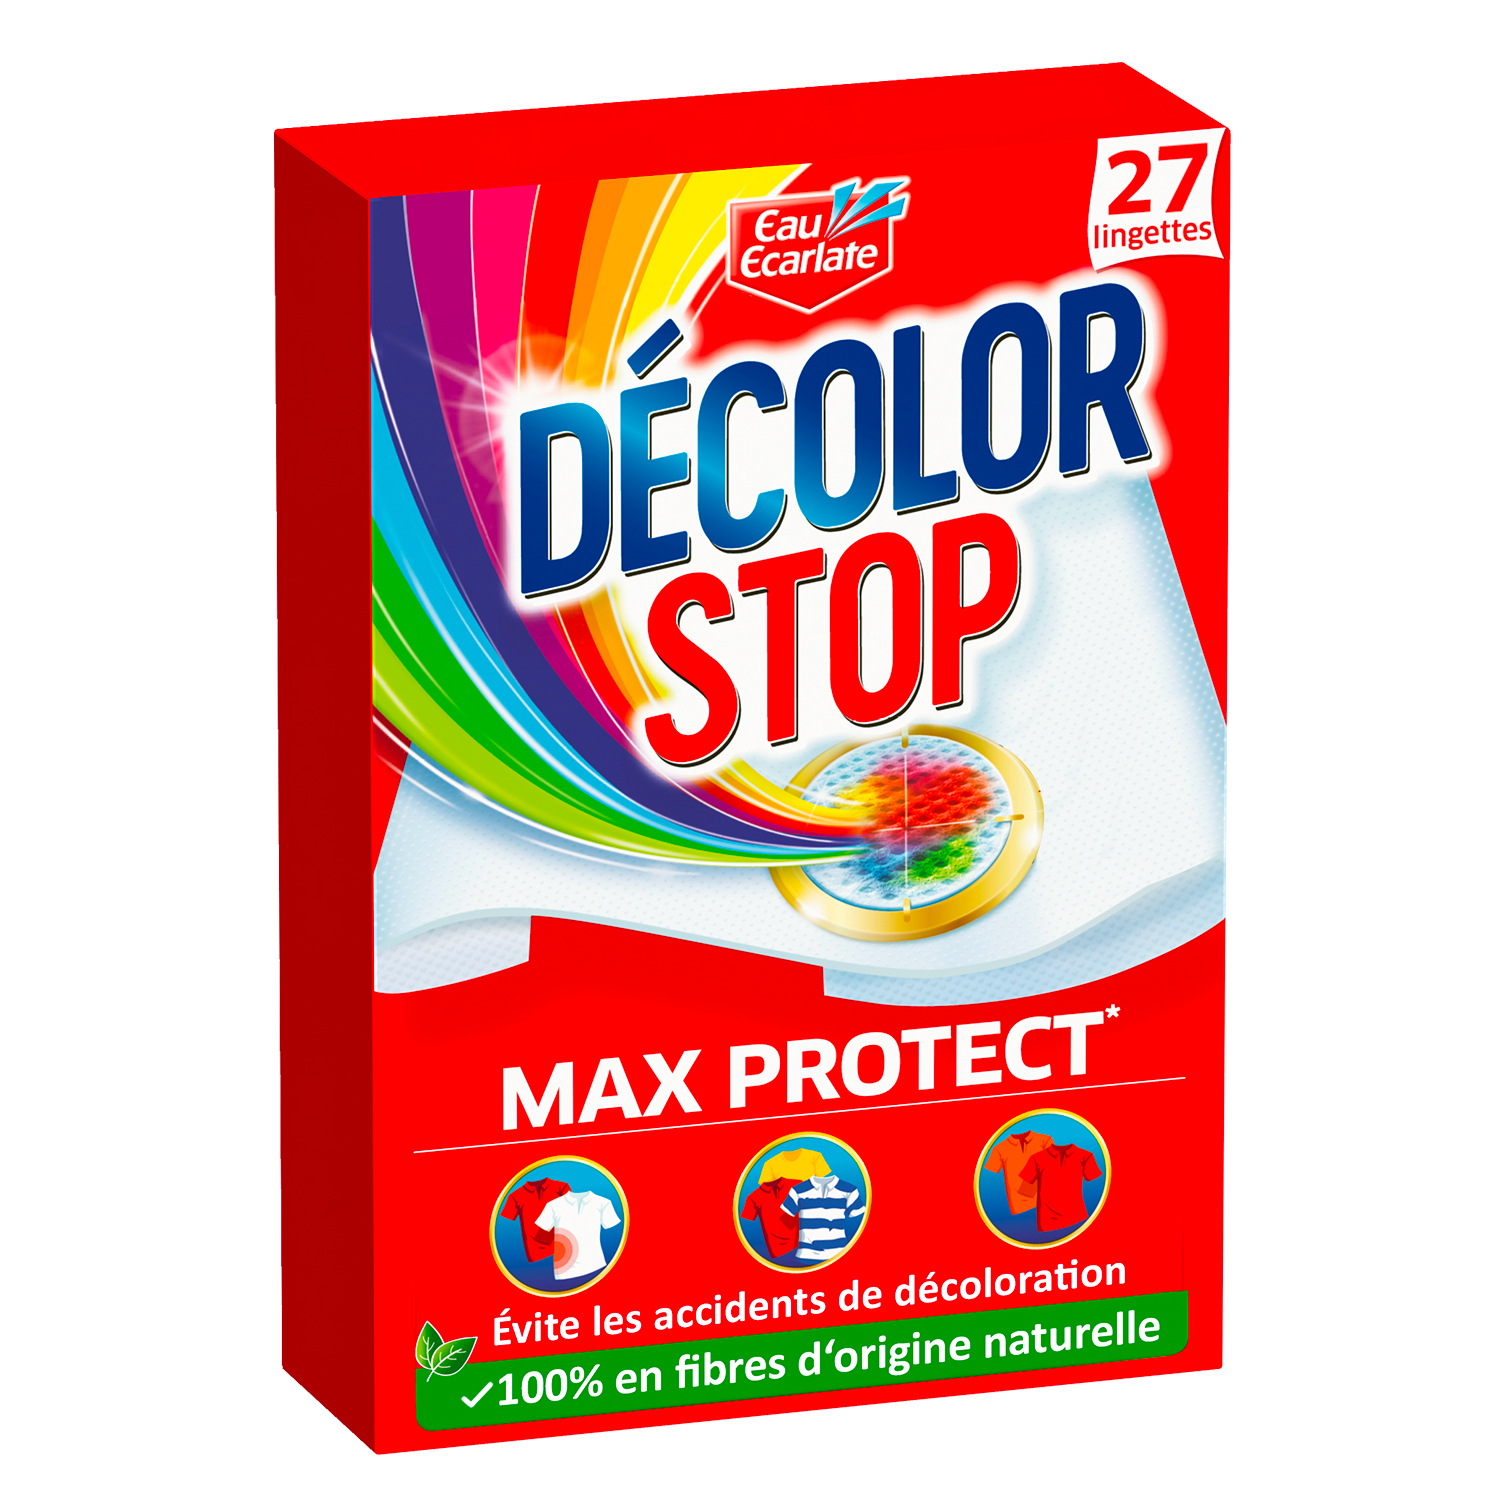 Décolor Stop Max Protect – Lingettes Anti-décoloration